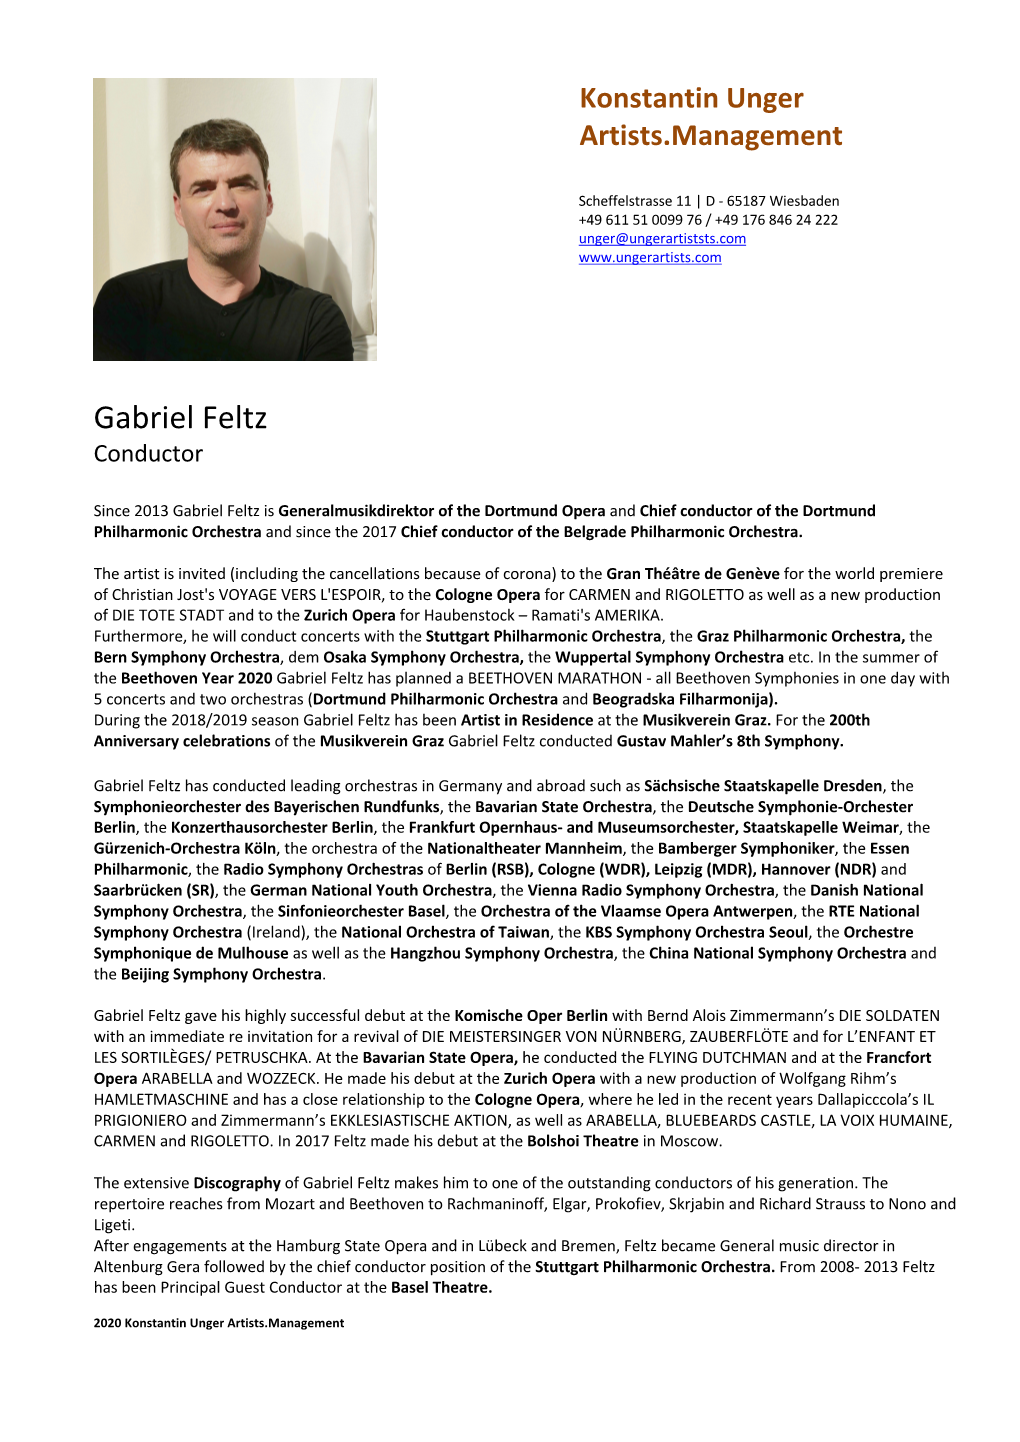 Gabriel Feltz Conductor